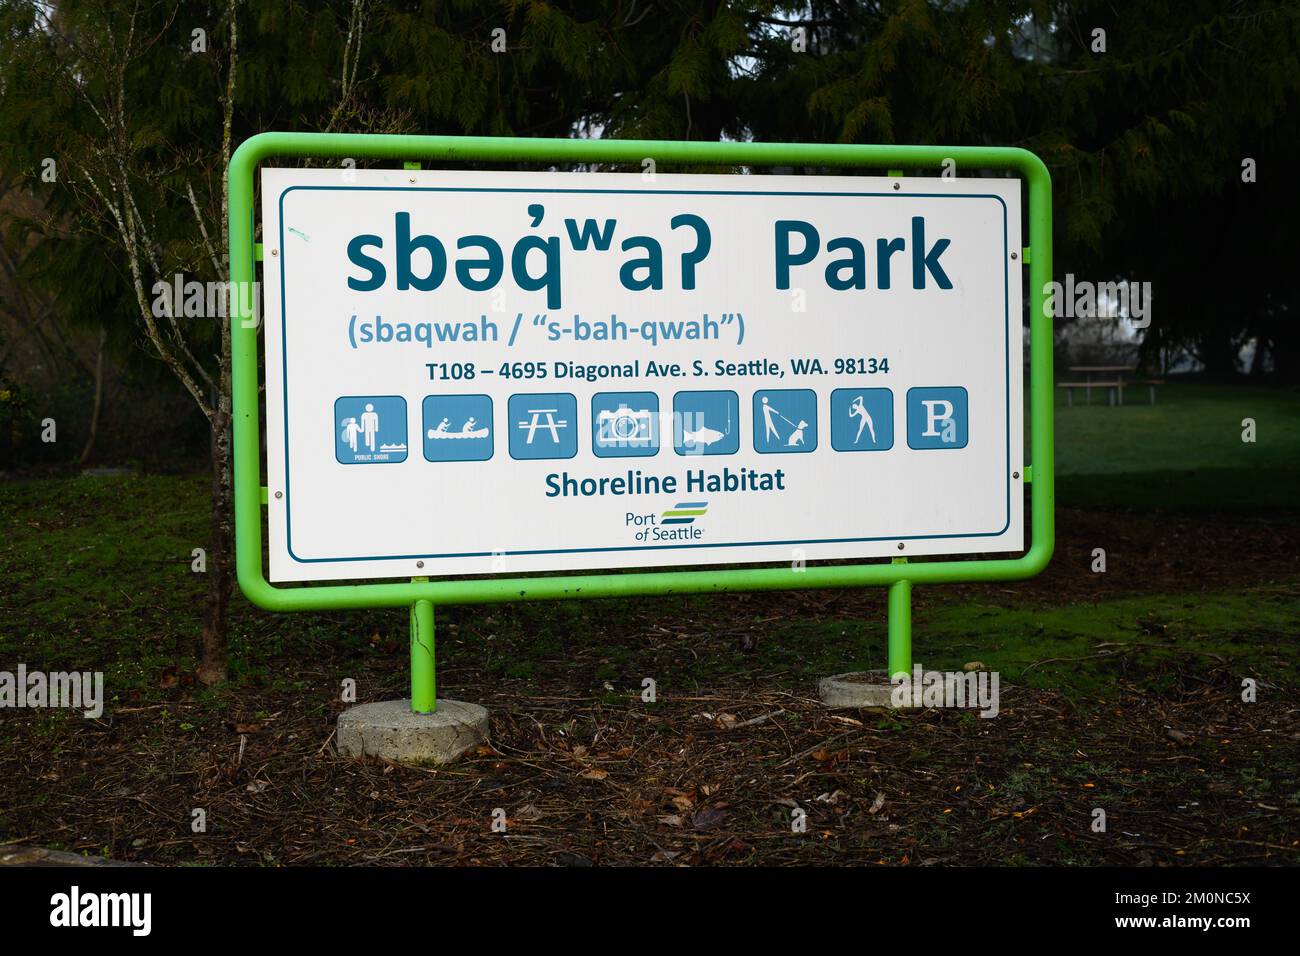 Seattle - 06. März 2022; Schild für Sbaqwah Park Ufer Habitat in der Stadt Seattle Stockfoto